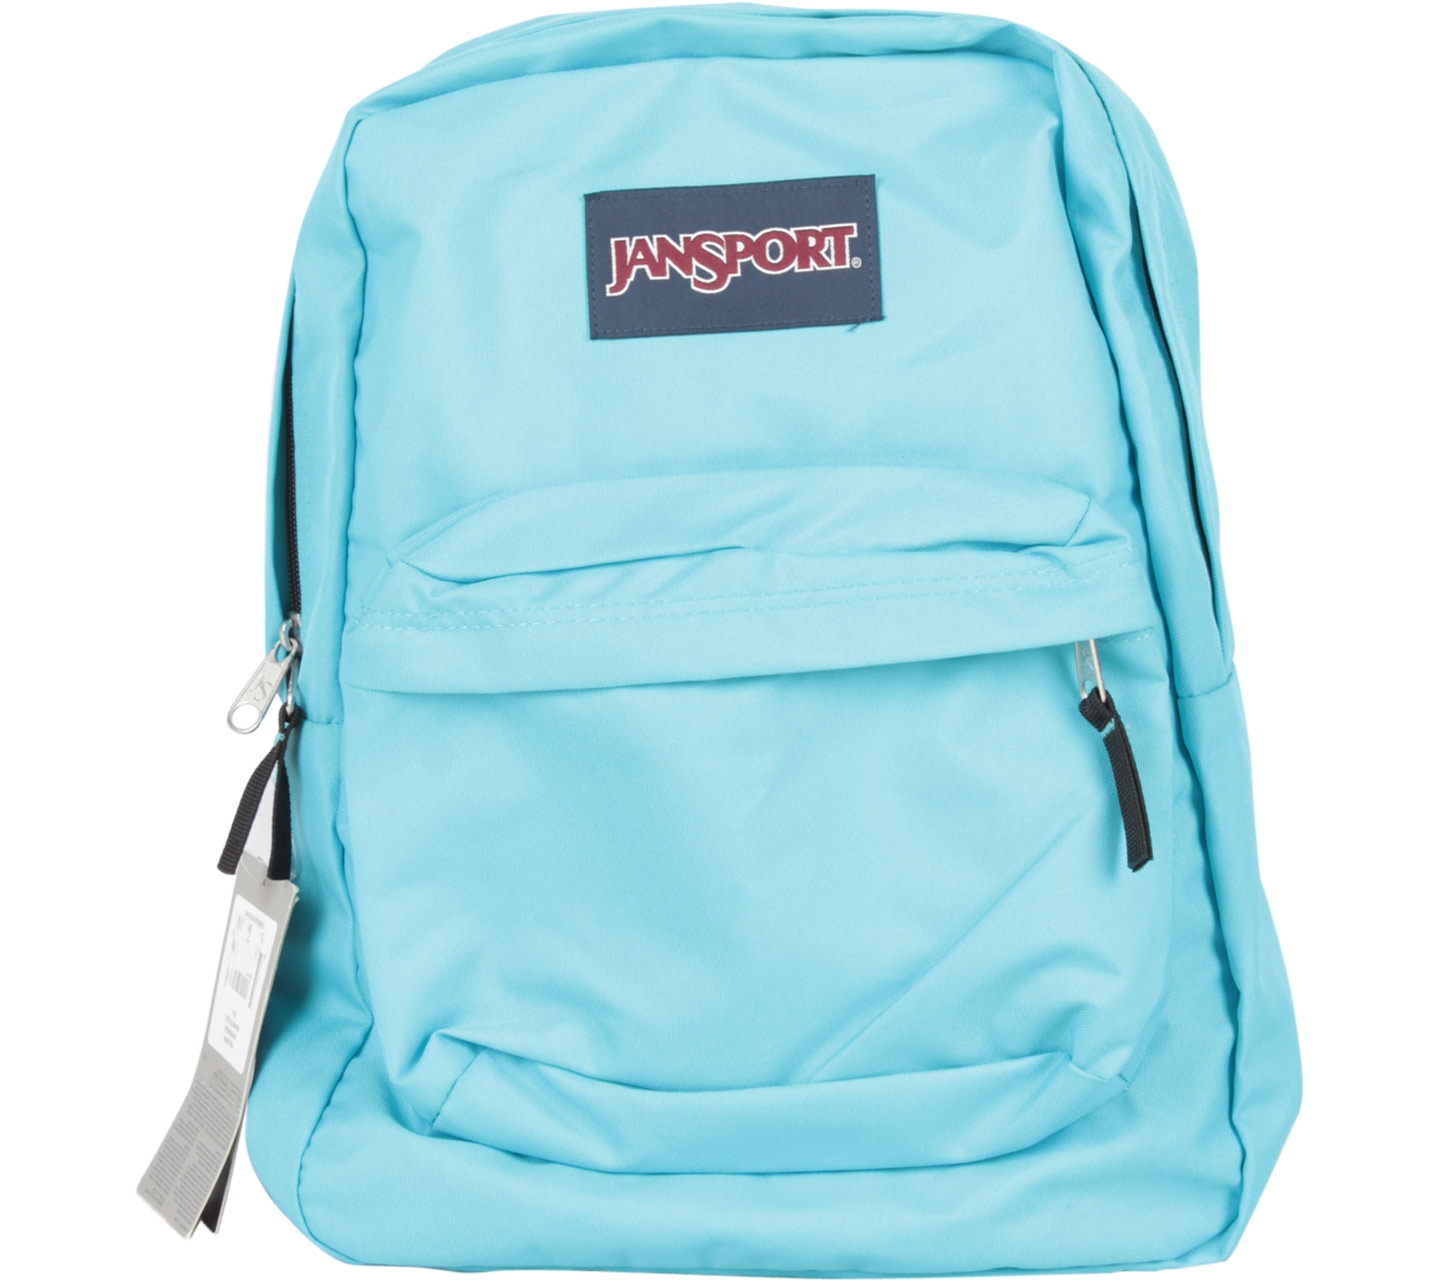 Jansport Blue Backpack